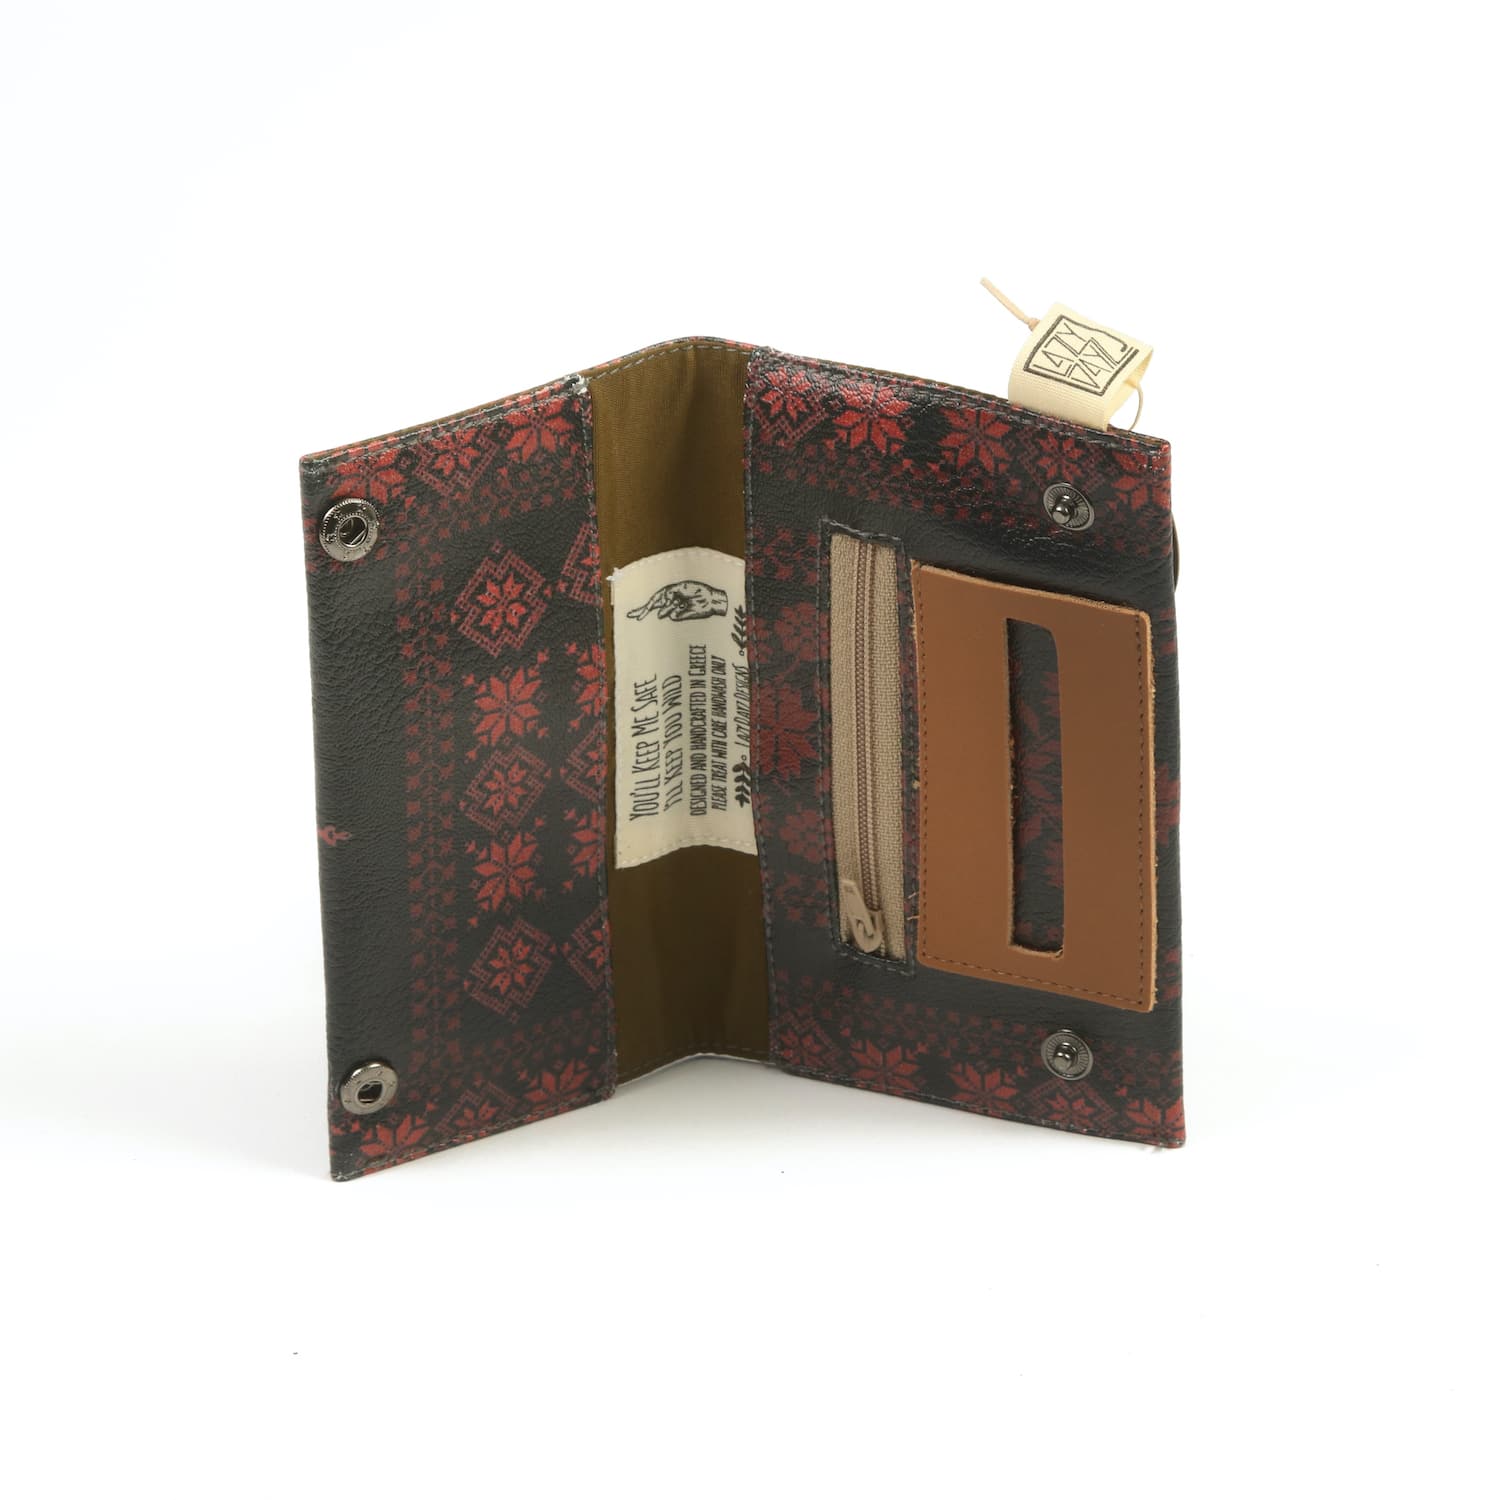 Γυναικεία καπνοθήκη από ψηφιακά εκτυπωμένη δερματίνη